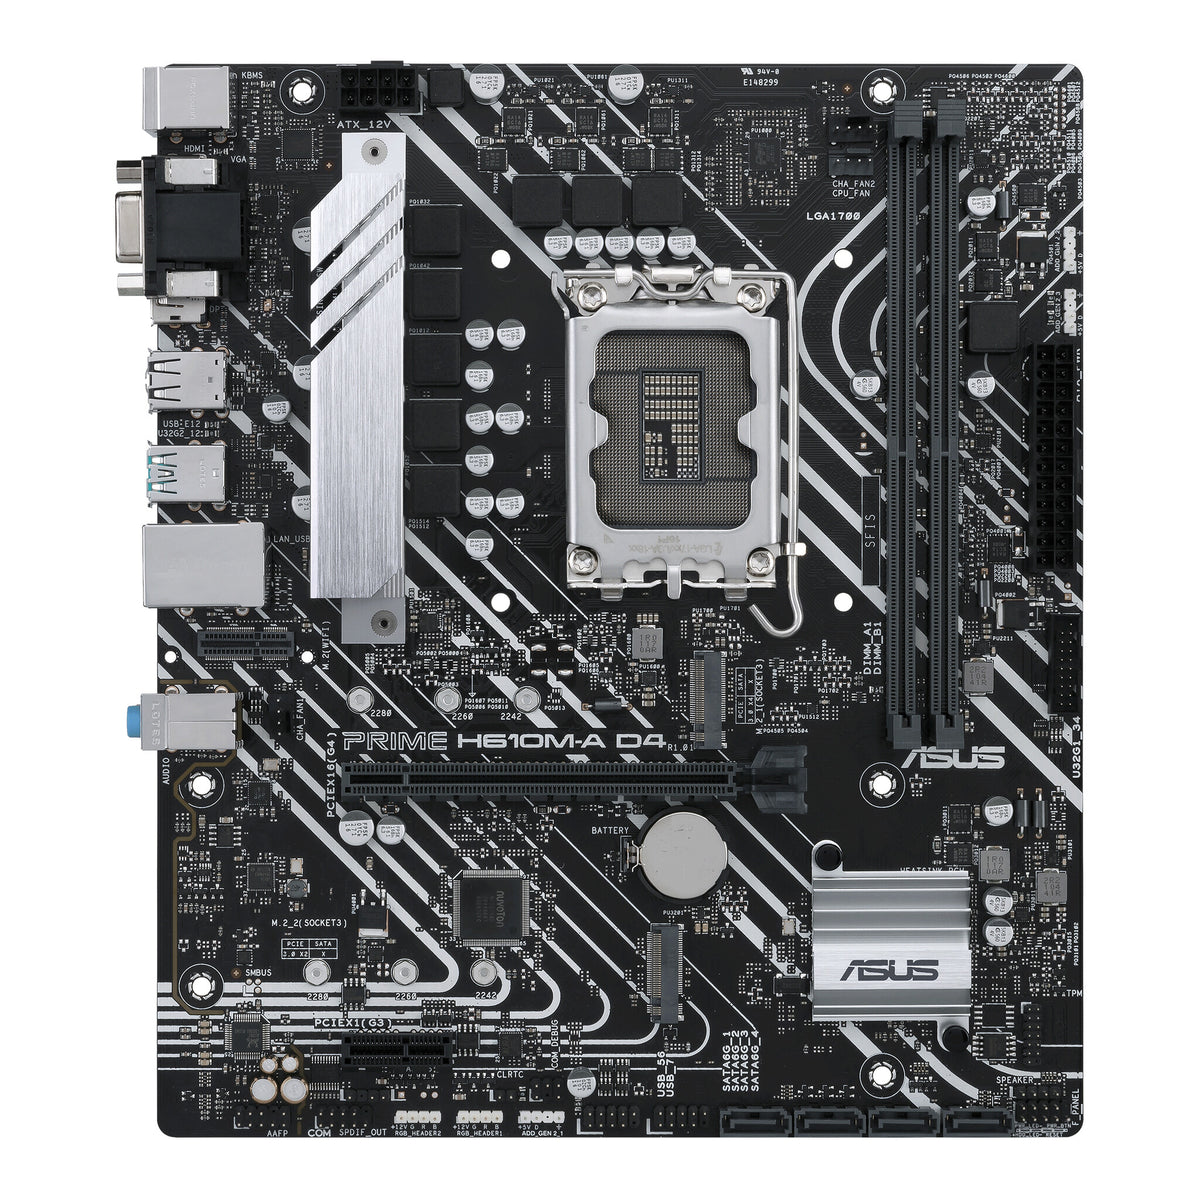 ASUS PRIME H610M-A D4 micro ATX motherboard - Intel H610 LGA 1700